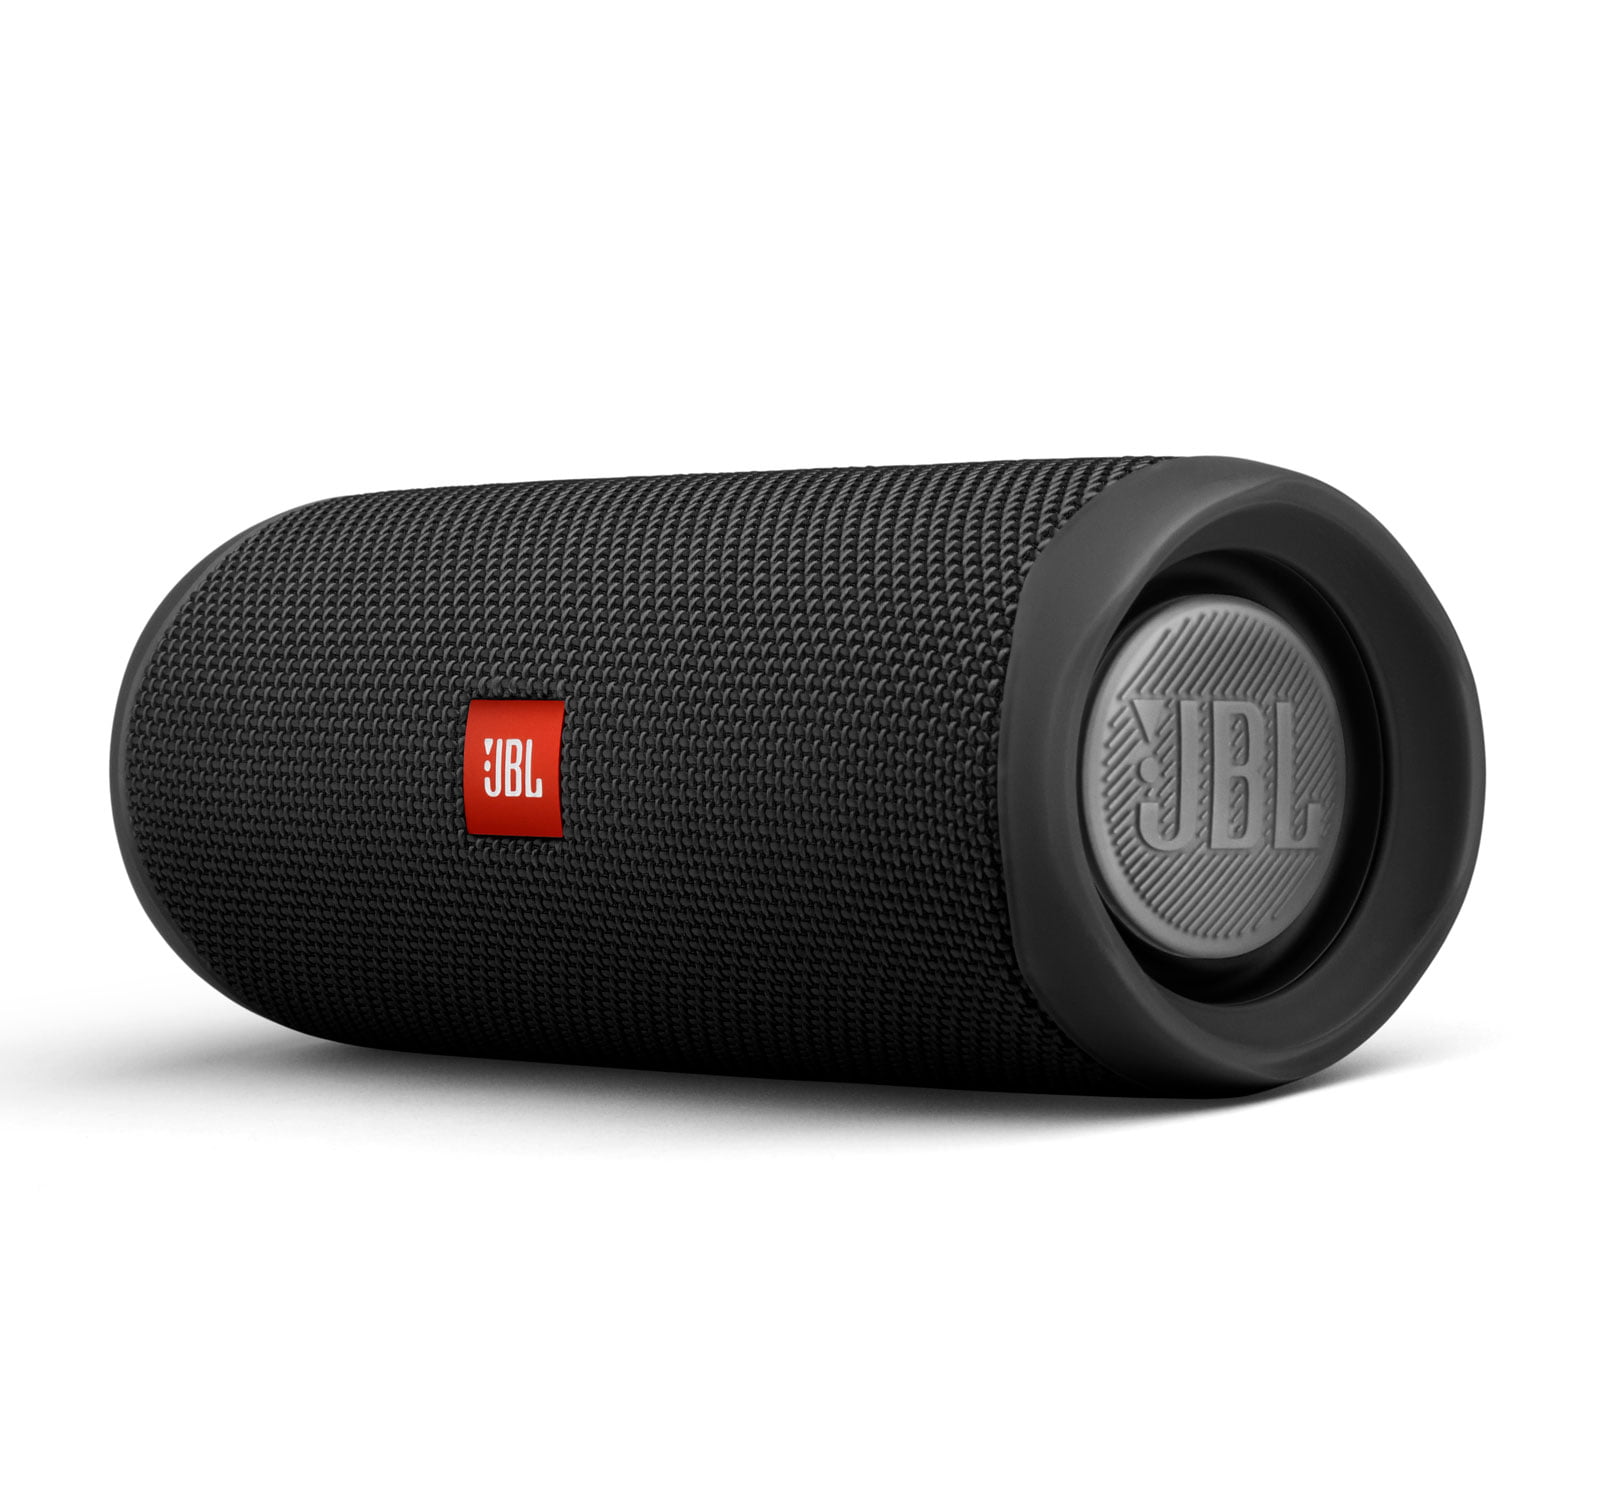 JBL Portable Bluetooth Speaker with Waterproof, Black, JBLFLIP5BLKAM-A2023111 - image 2 of 4